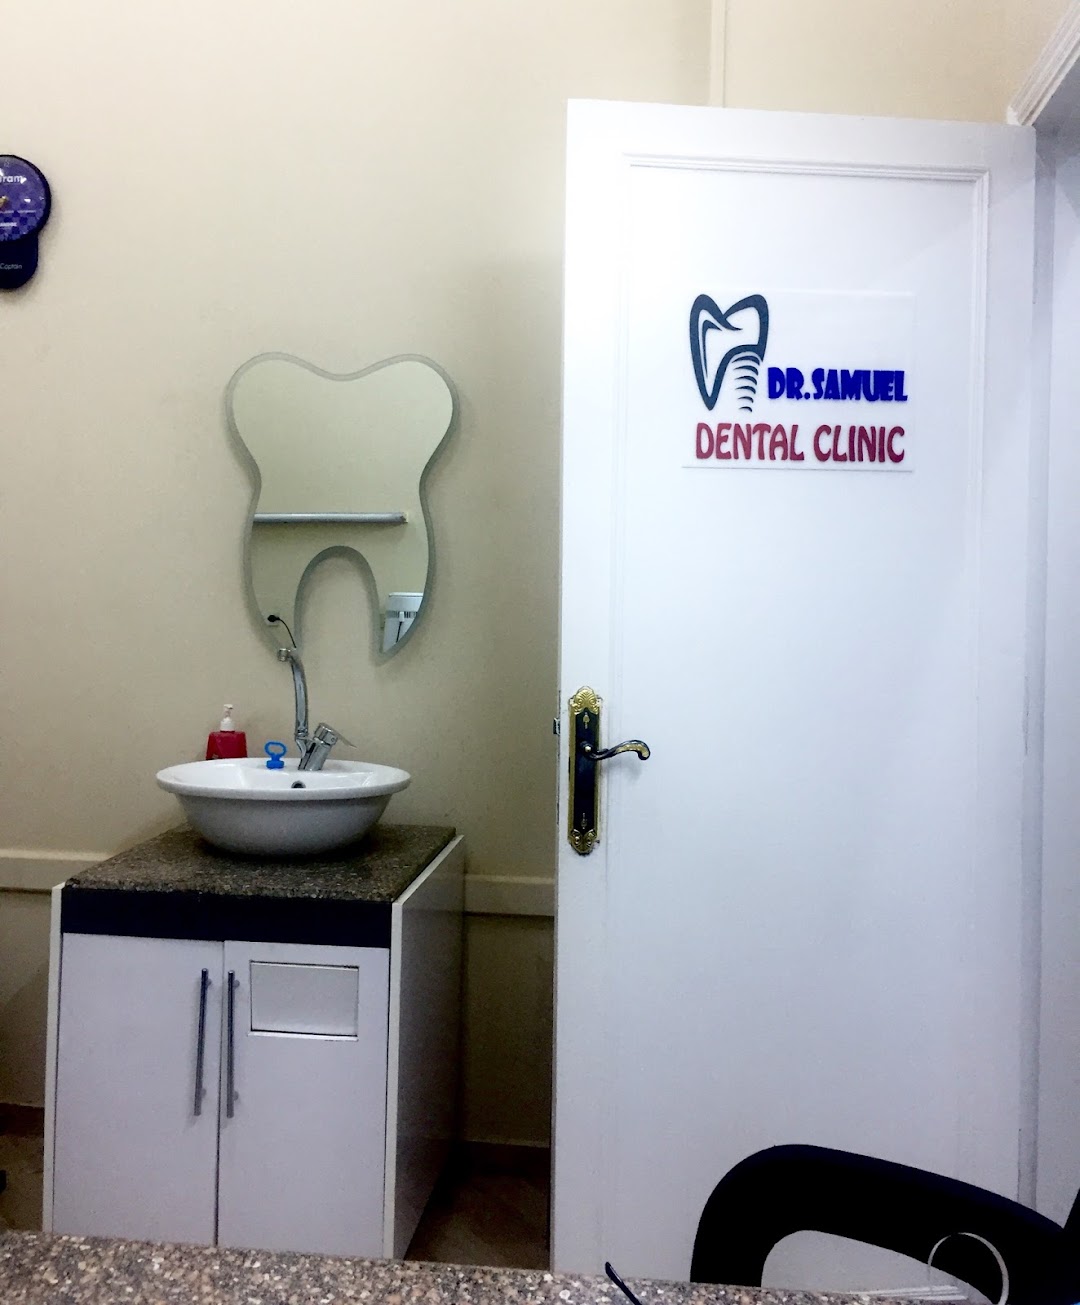 عيادة دكتور صموئيل ماجد لويز لطب الاسنان Dr.Samuel Maged Dental Clinic